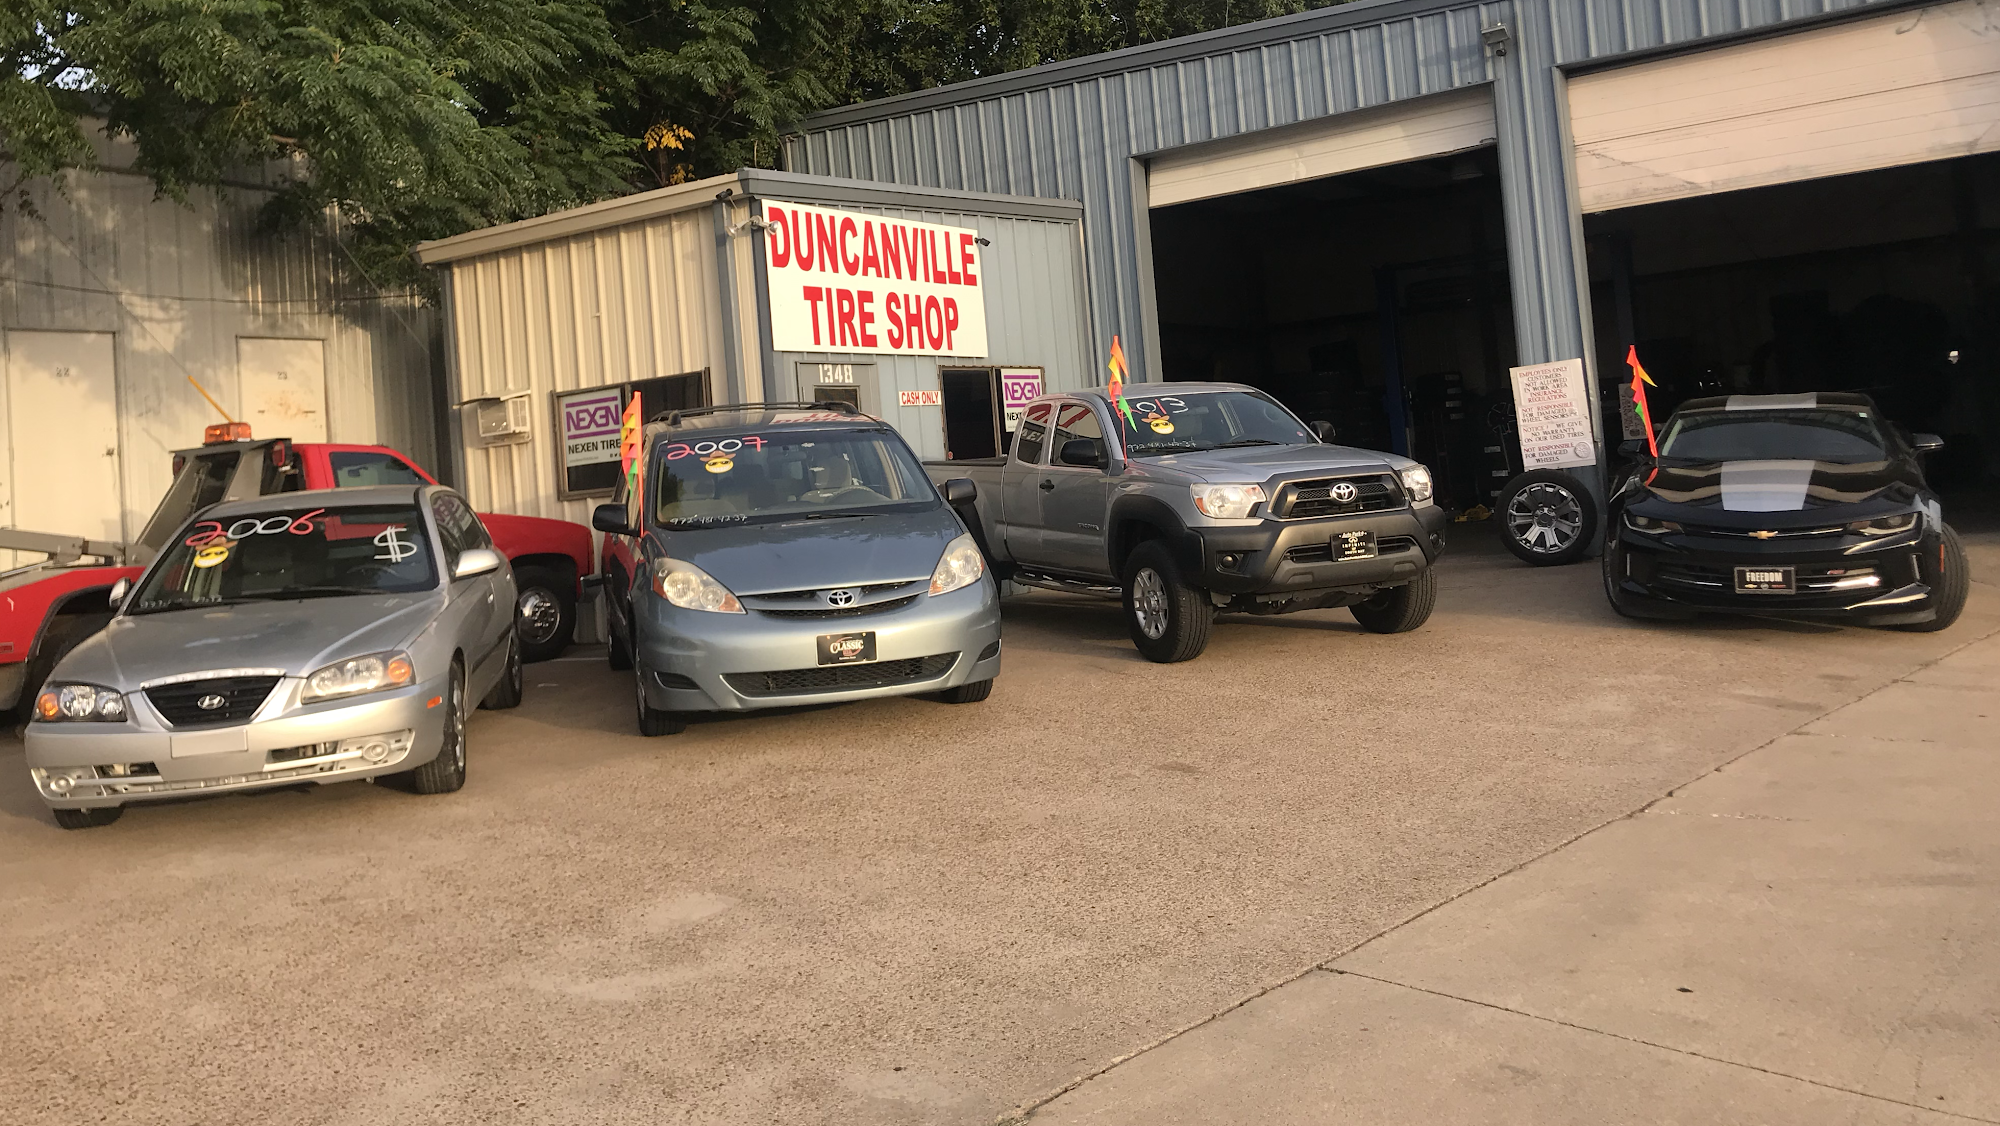 Duncanville Tire Shop